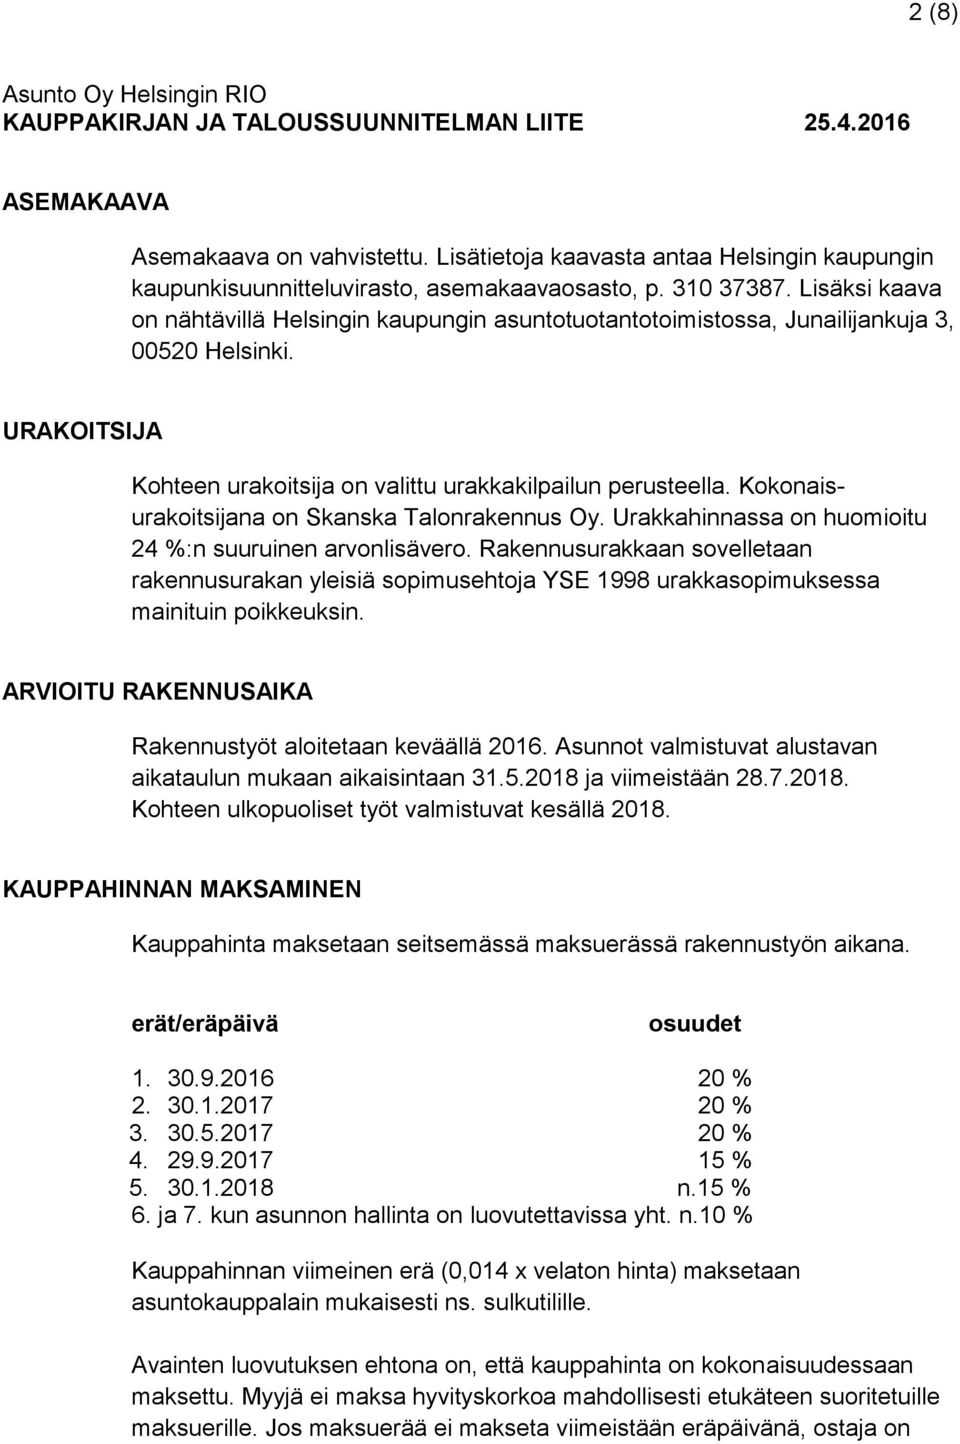 Kokonaisurakoitsijana on Skanska Talonrakennus Oy. Urakkahinnassa on huomioitu 24 %:n suuruinen arvonlisävero.